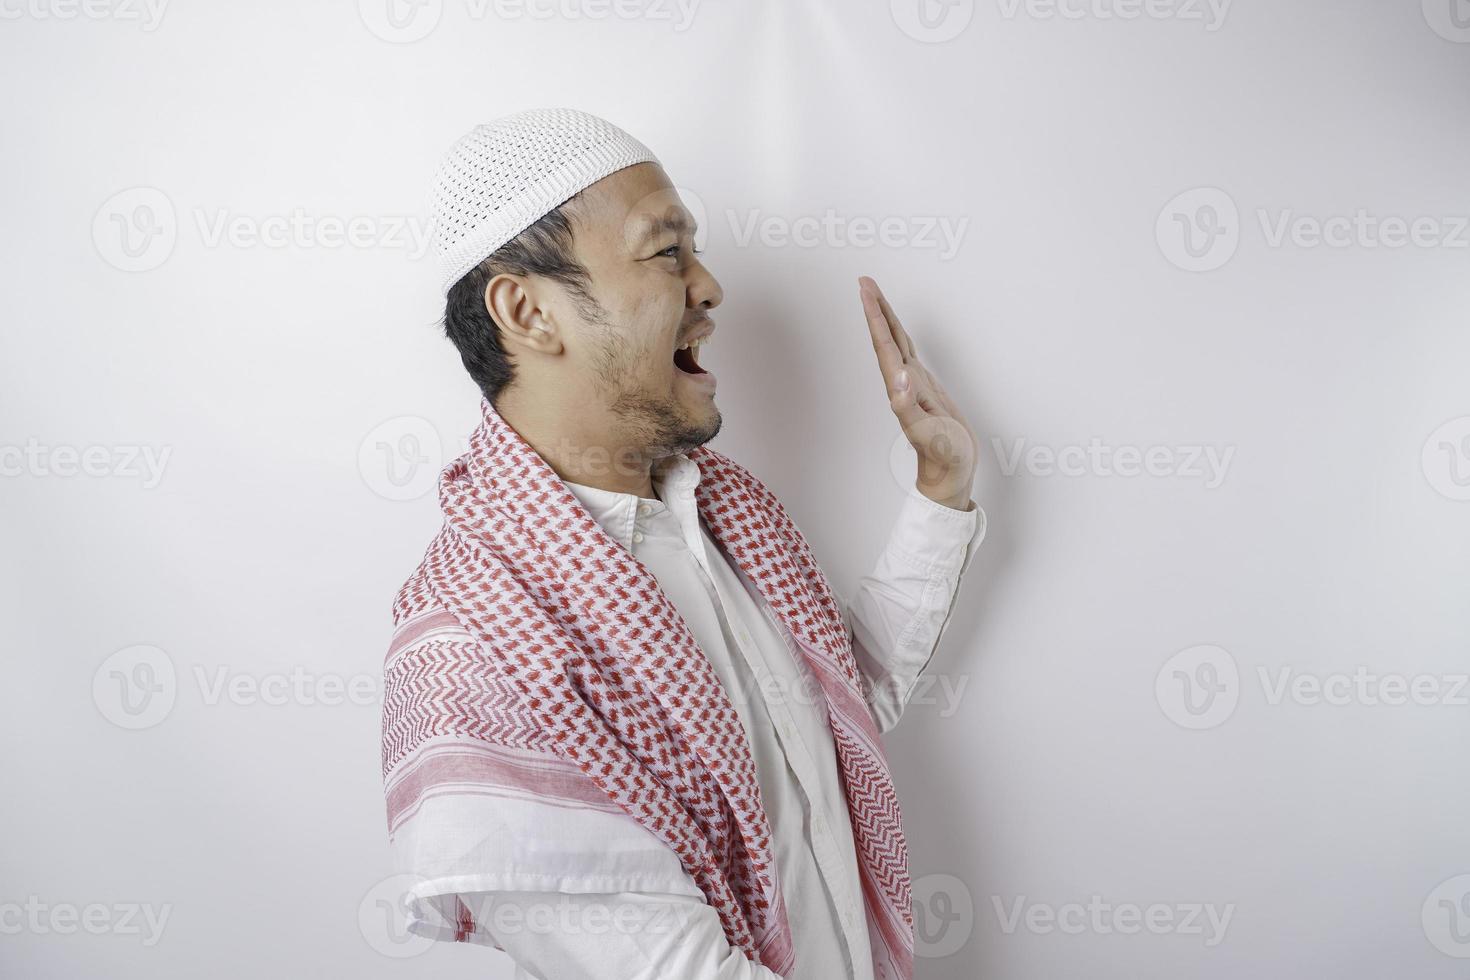 upphetsad asiatisk muslim man pekande på de kopia Plats bredvid honom, isolerat förbi vit bakgrund foto